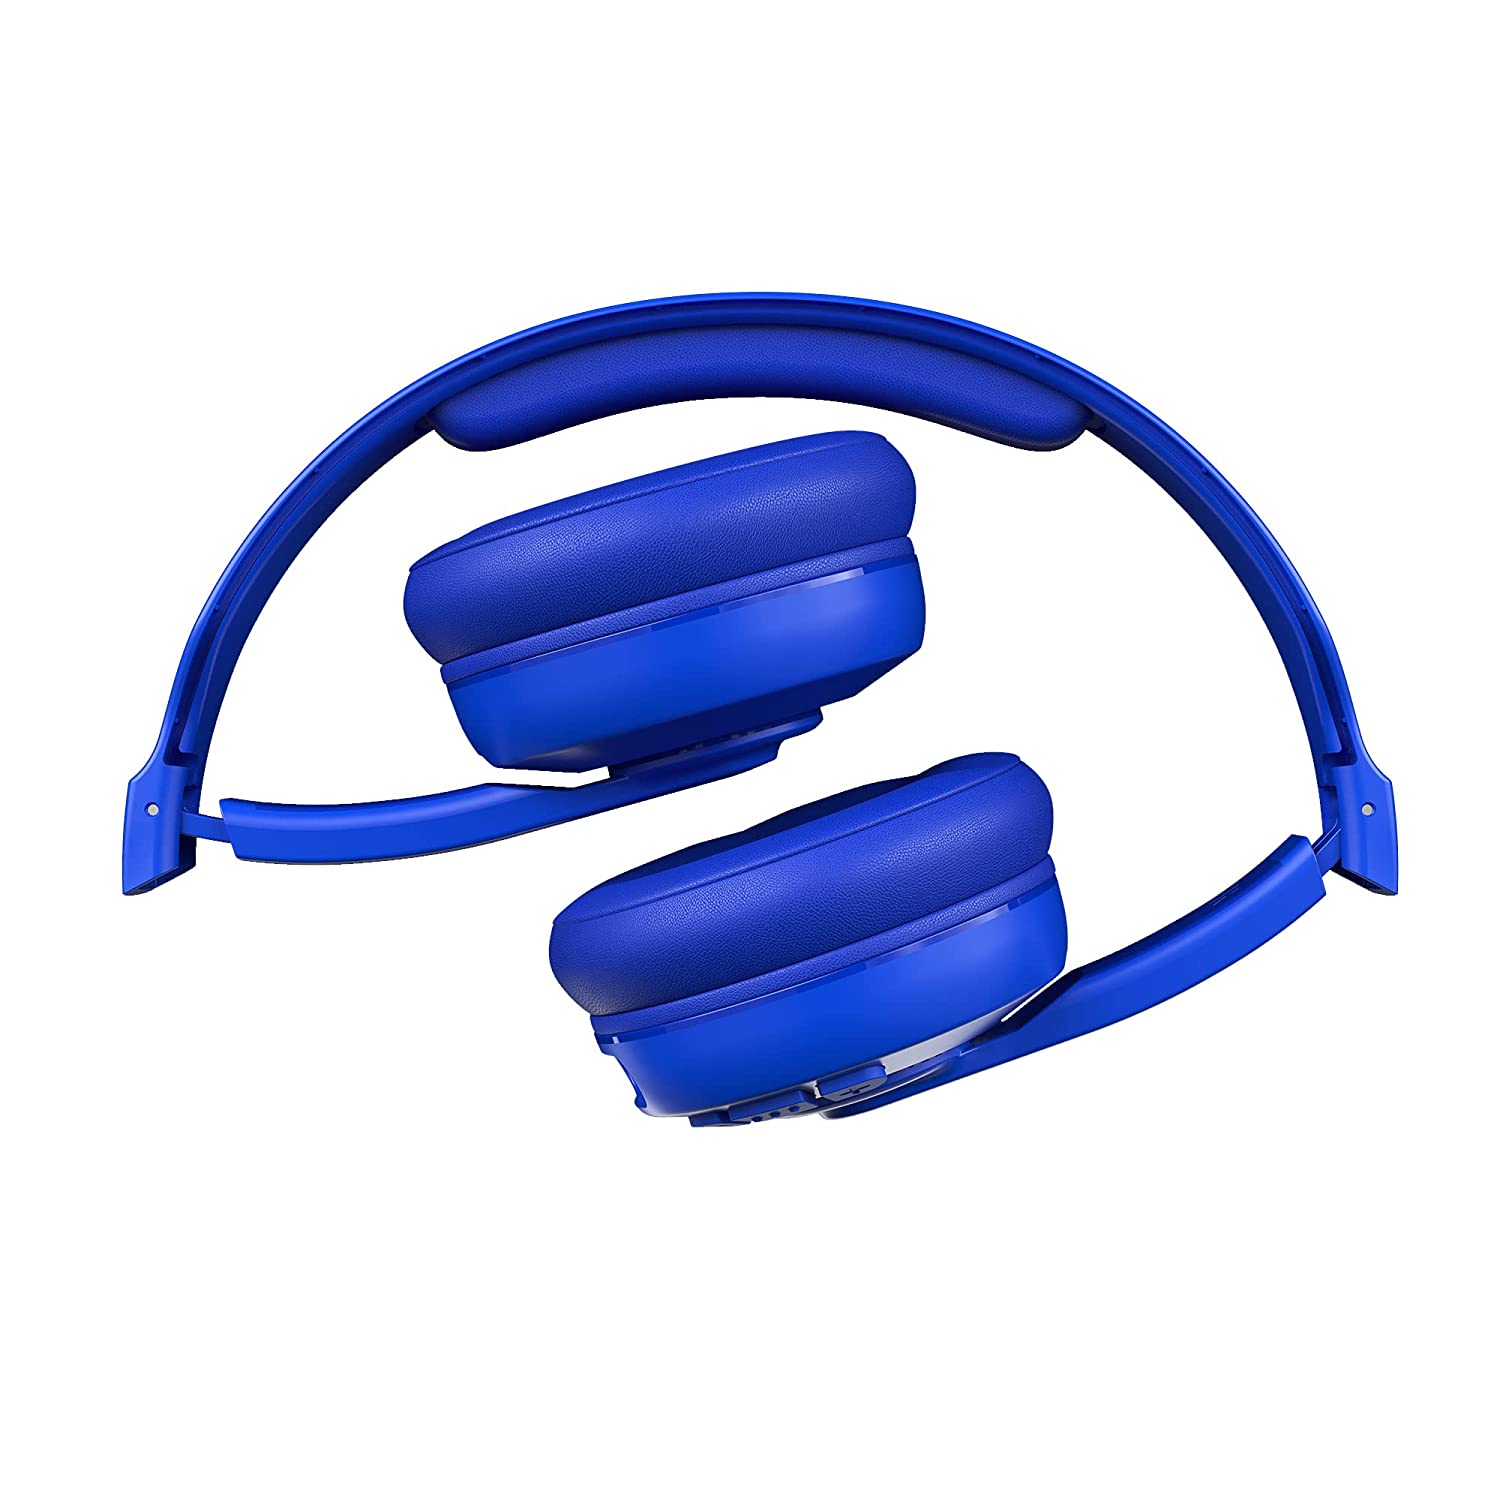 Skullcandy Cassette Wireless On Ear Headphone - Cobalt Blue